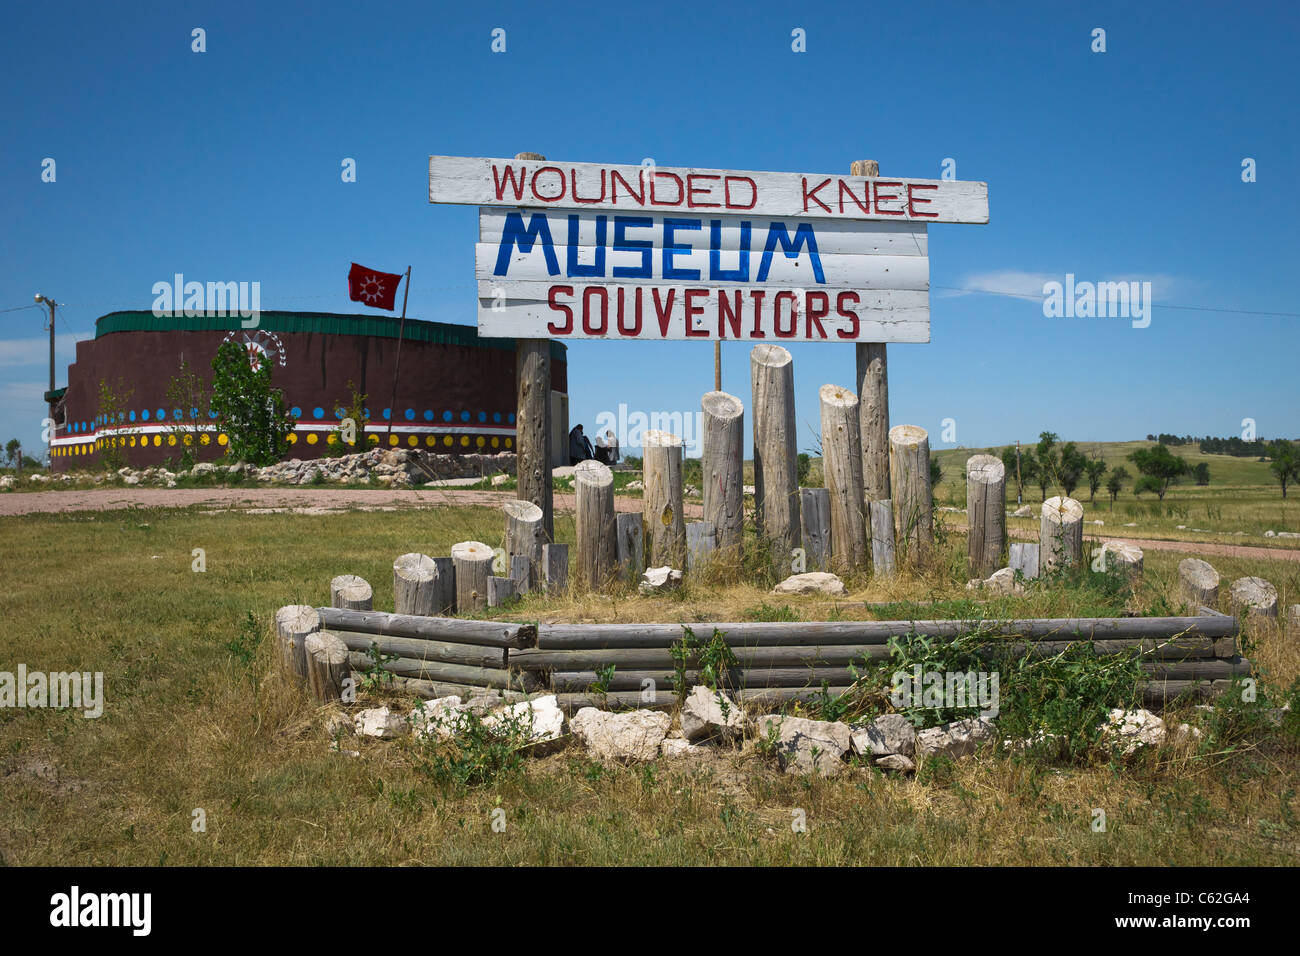 Wounded Knee massacre Museum situé près de fosse commune sur la réserve Oglala Lakota Sioux Pine Ridge dans le Dakota du Sud États-Unis haute résolution Banque D'Images